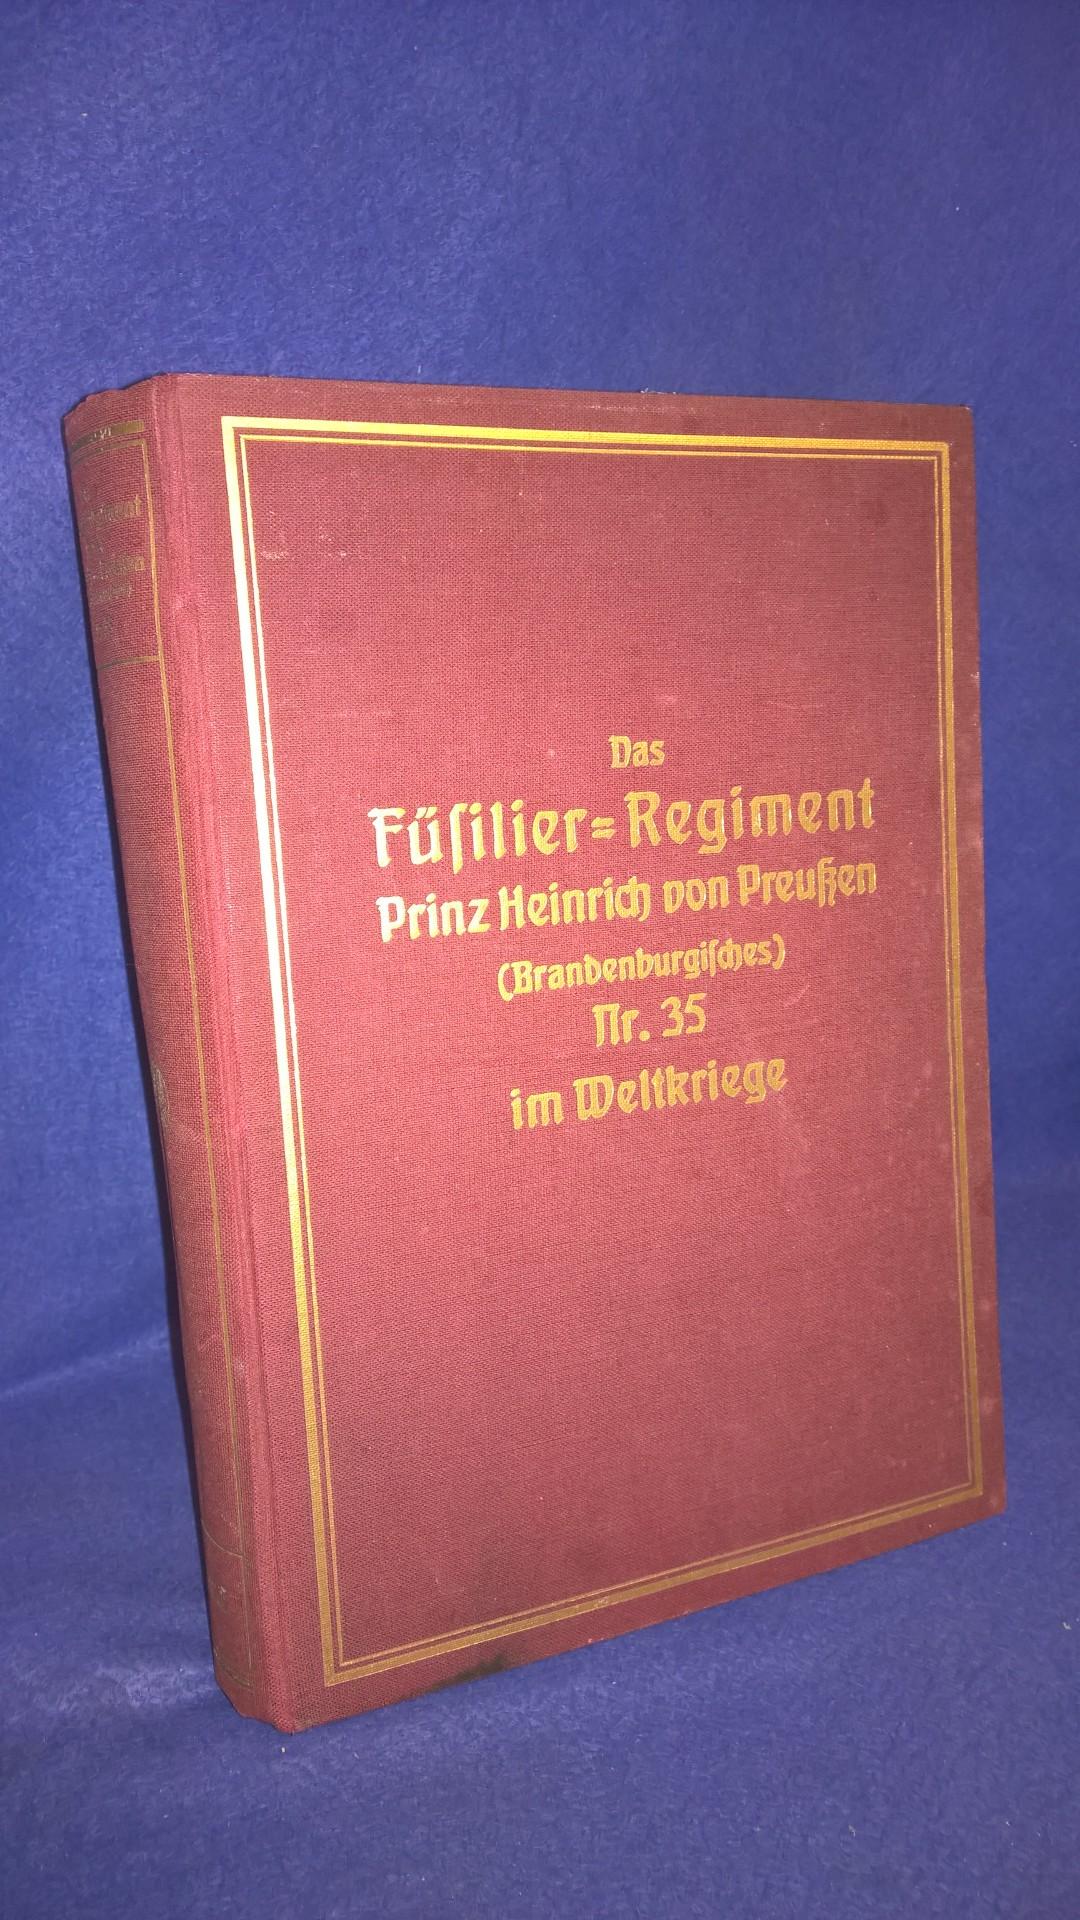 Das Füsilier-Regiment Prinz Heinrich von Preußen (Brandenburgisches) Nr. 35 im Weltkriege.